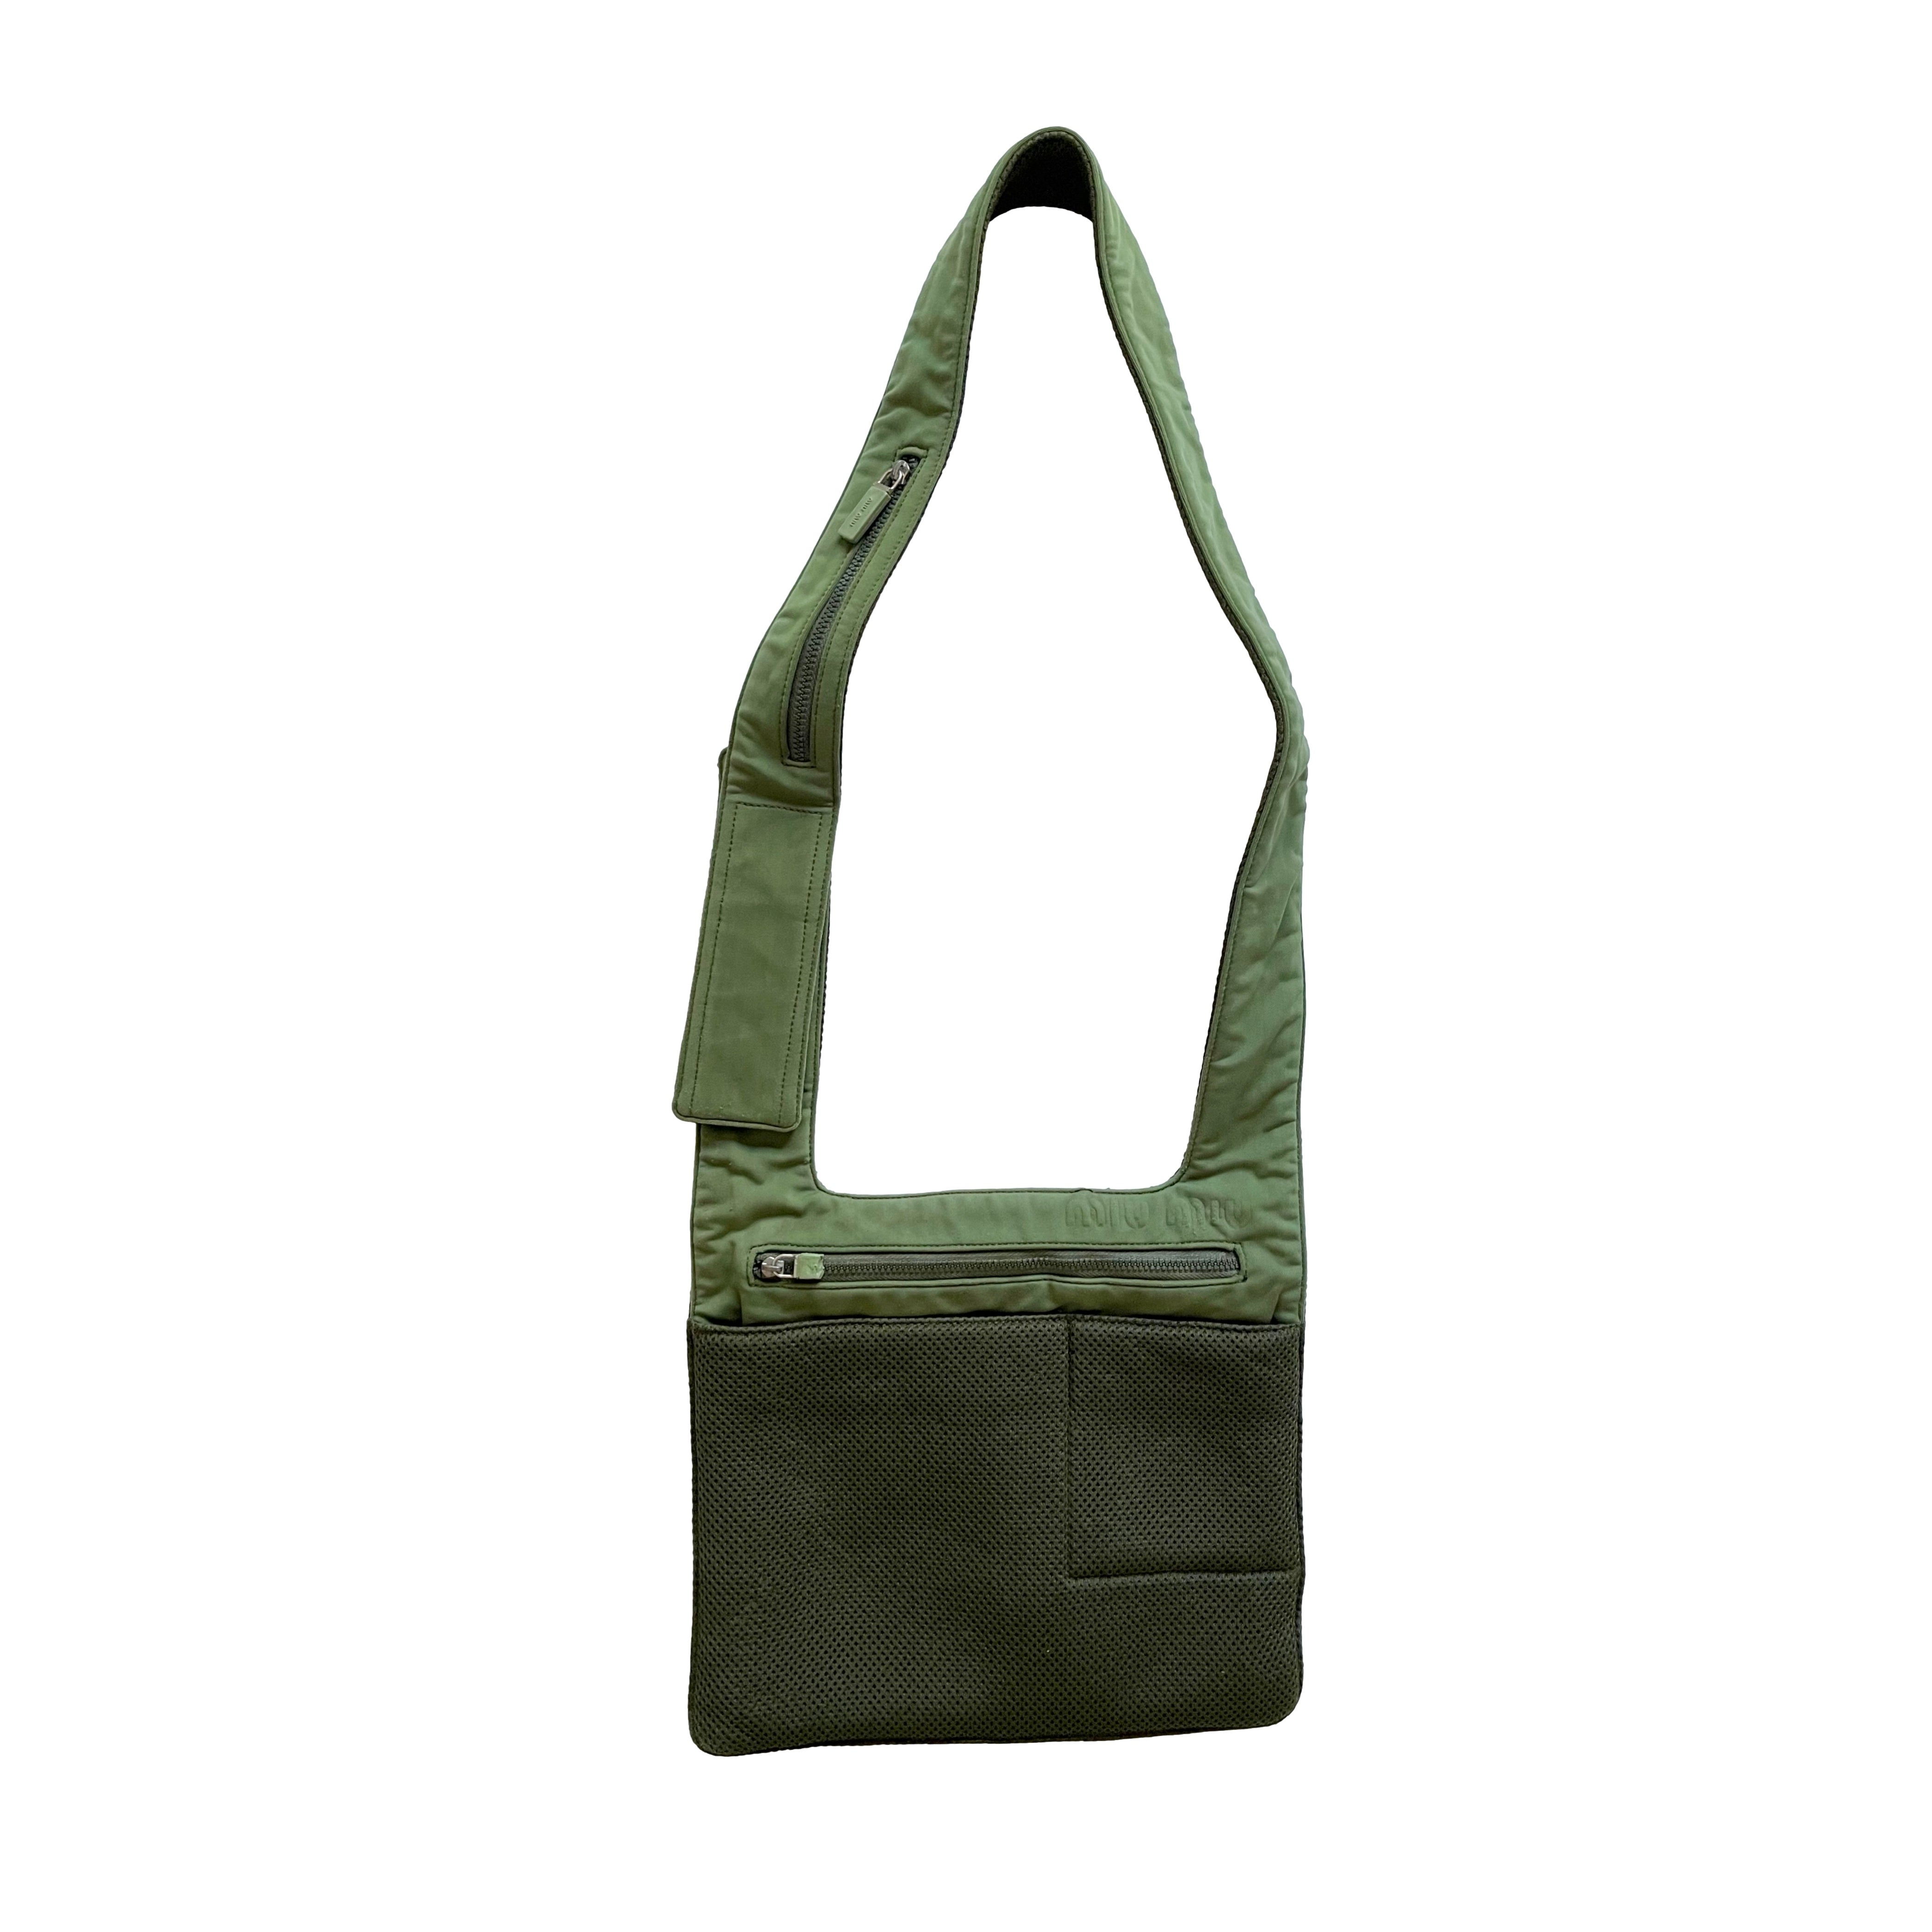 Miu Miu Bag Vintage Cross Body Green Color 1998 A/w Patent -  India